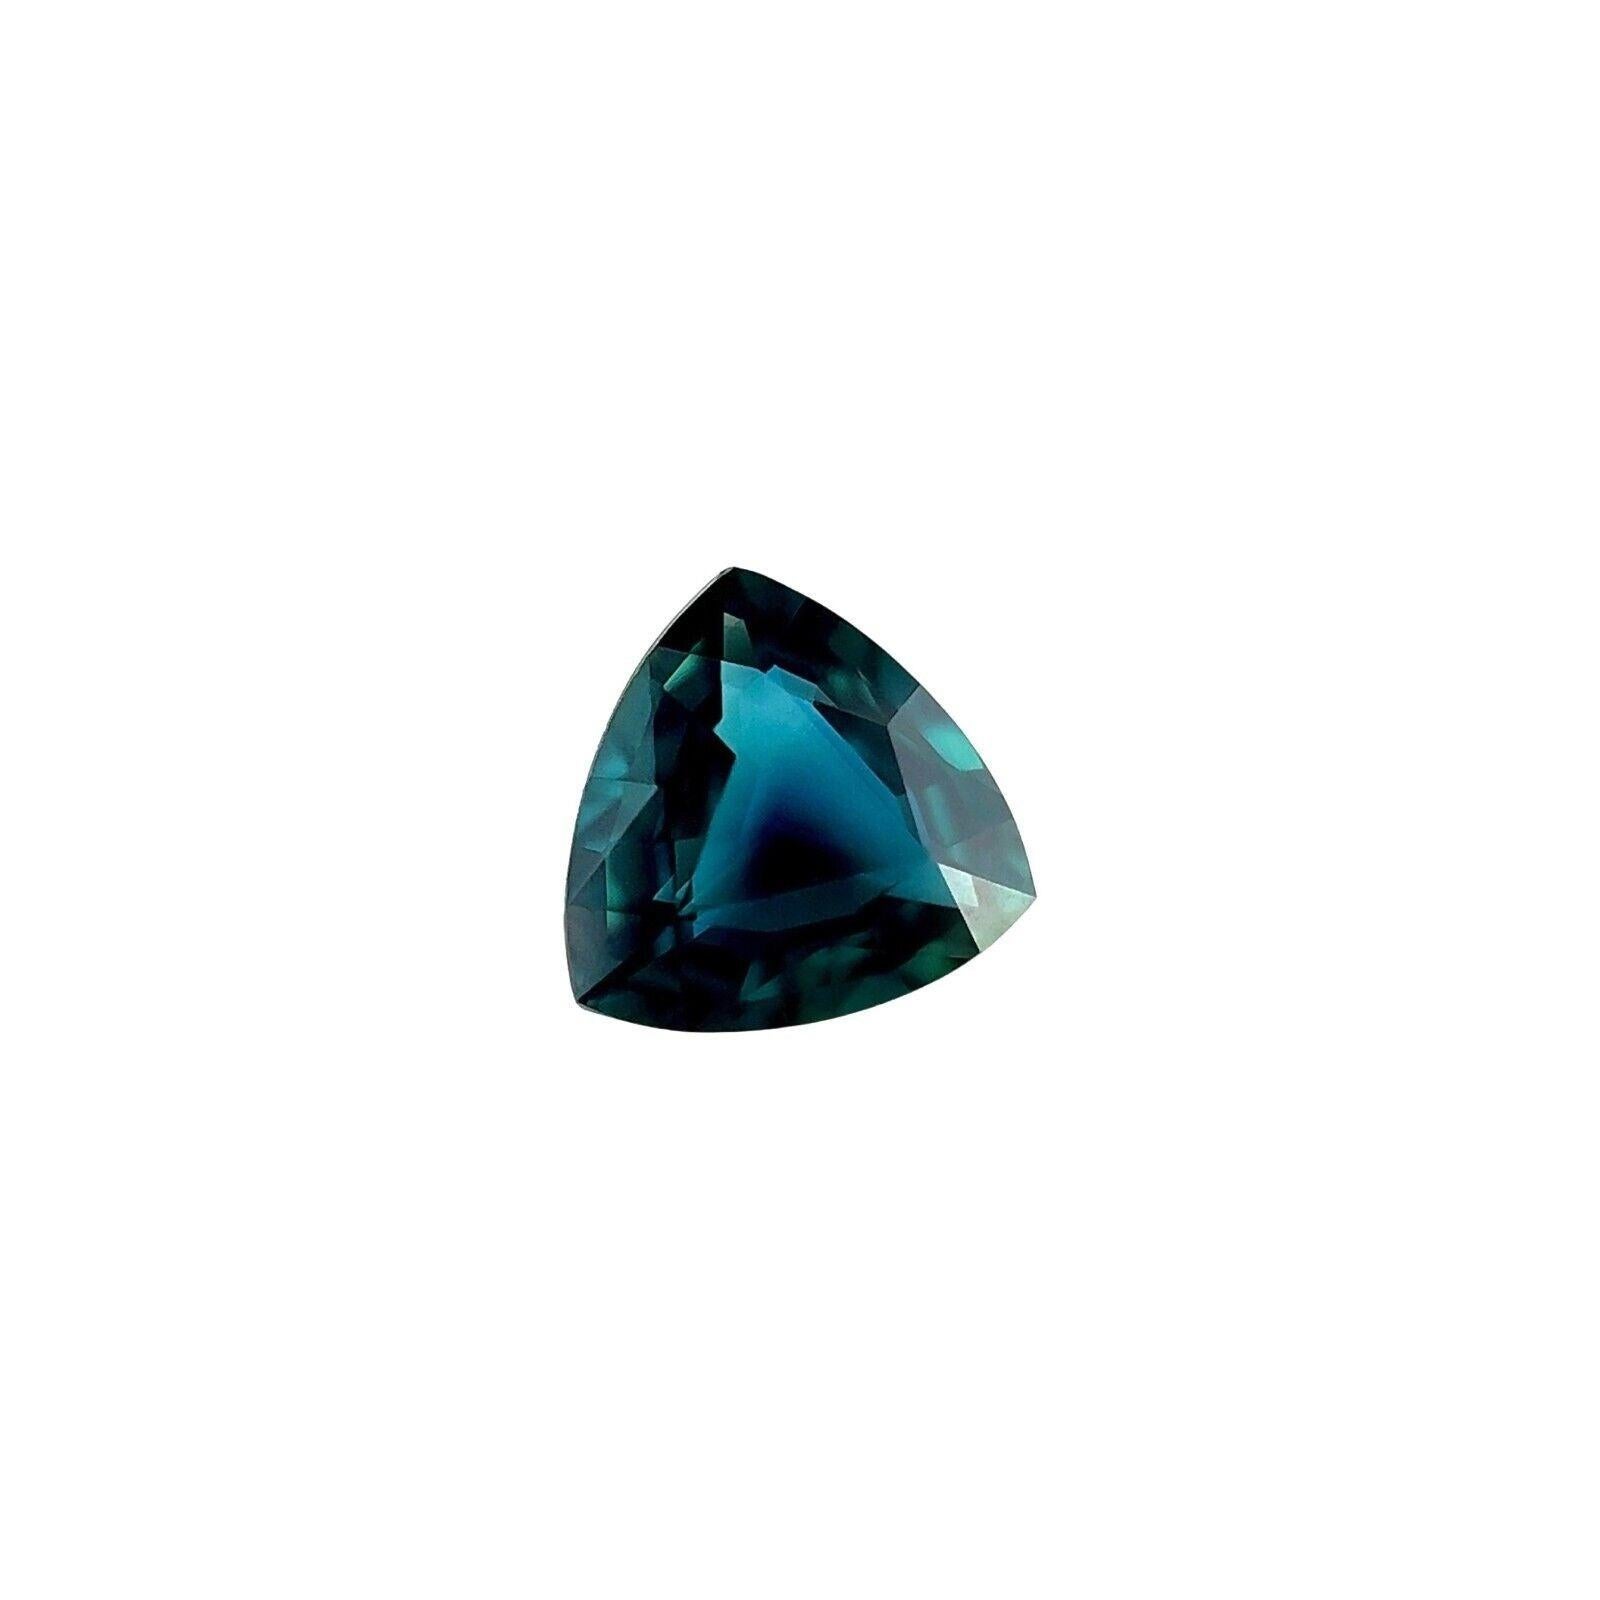 GIA zertifiziert 1.15Ct blauer Saphir unbehandelt feiner natürlicher Dreiecksschliff Edelstein

GIA-zertifizierter unbehandelter tiefblauer Saphir Edelstein.
Unerhitzter Saphir von 1,15 Karat mit feiner tiefblauer Farbe und ausgezeichneter Klarheit,